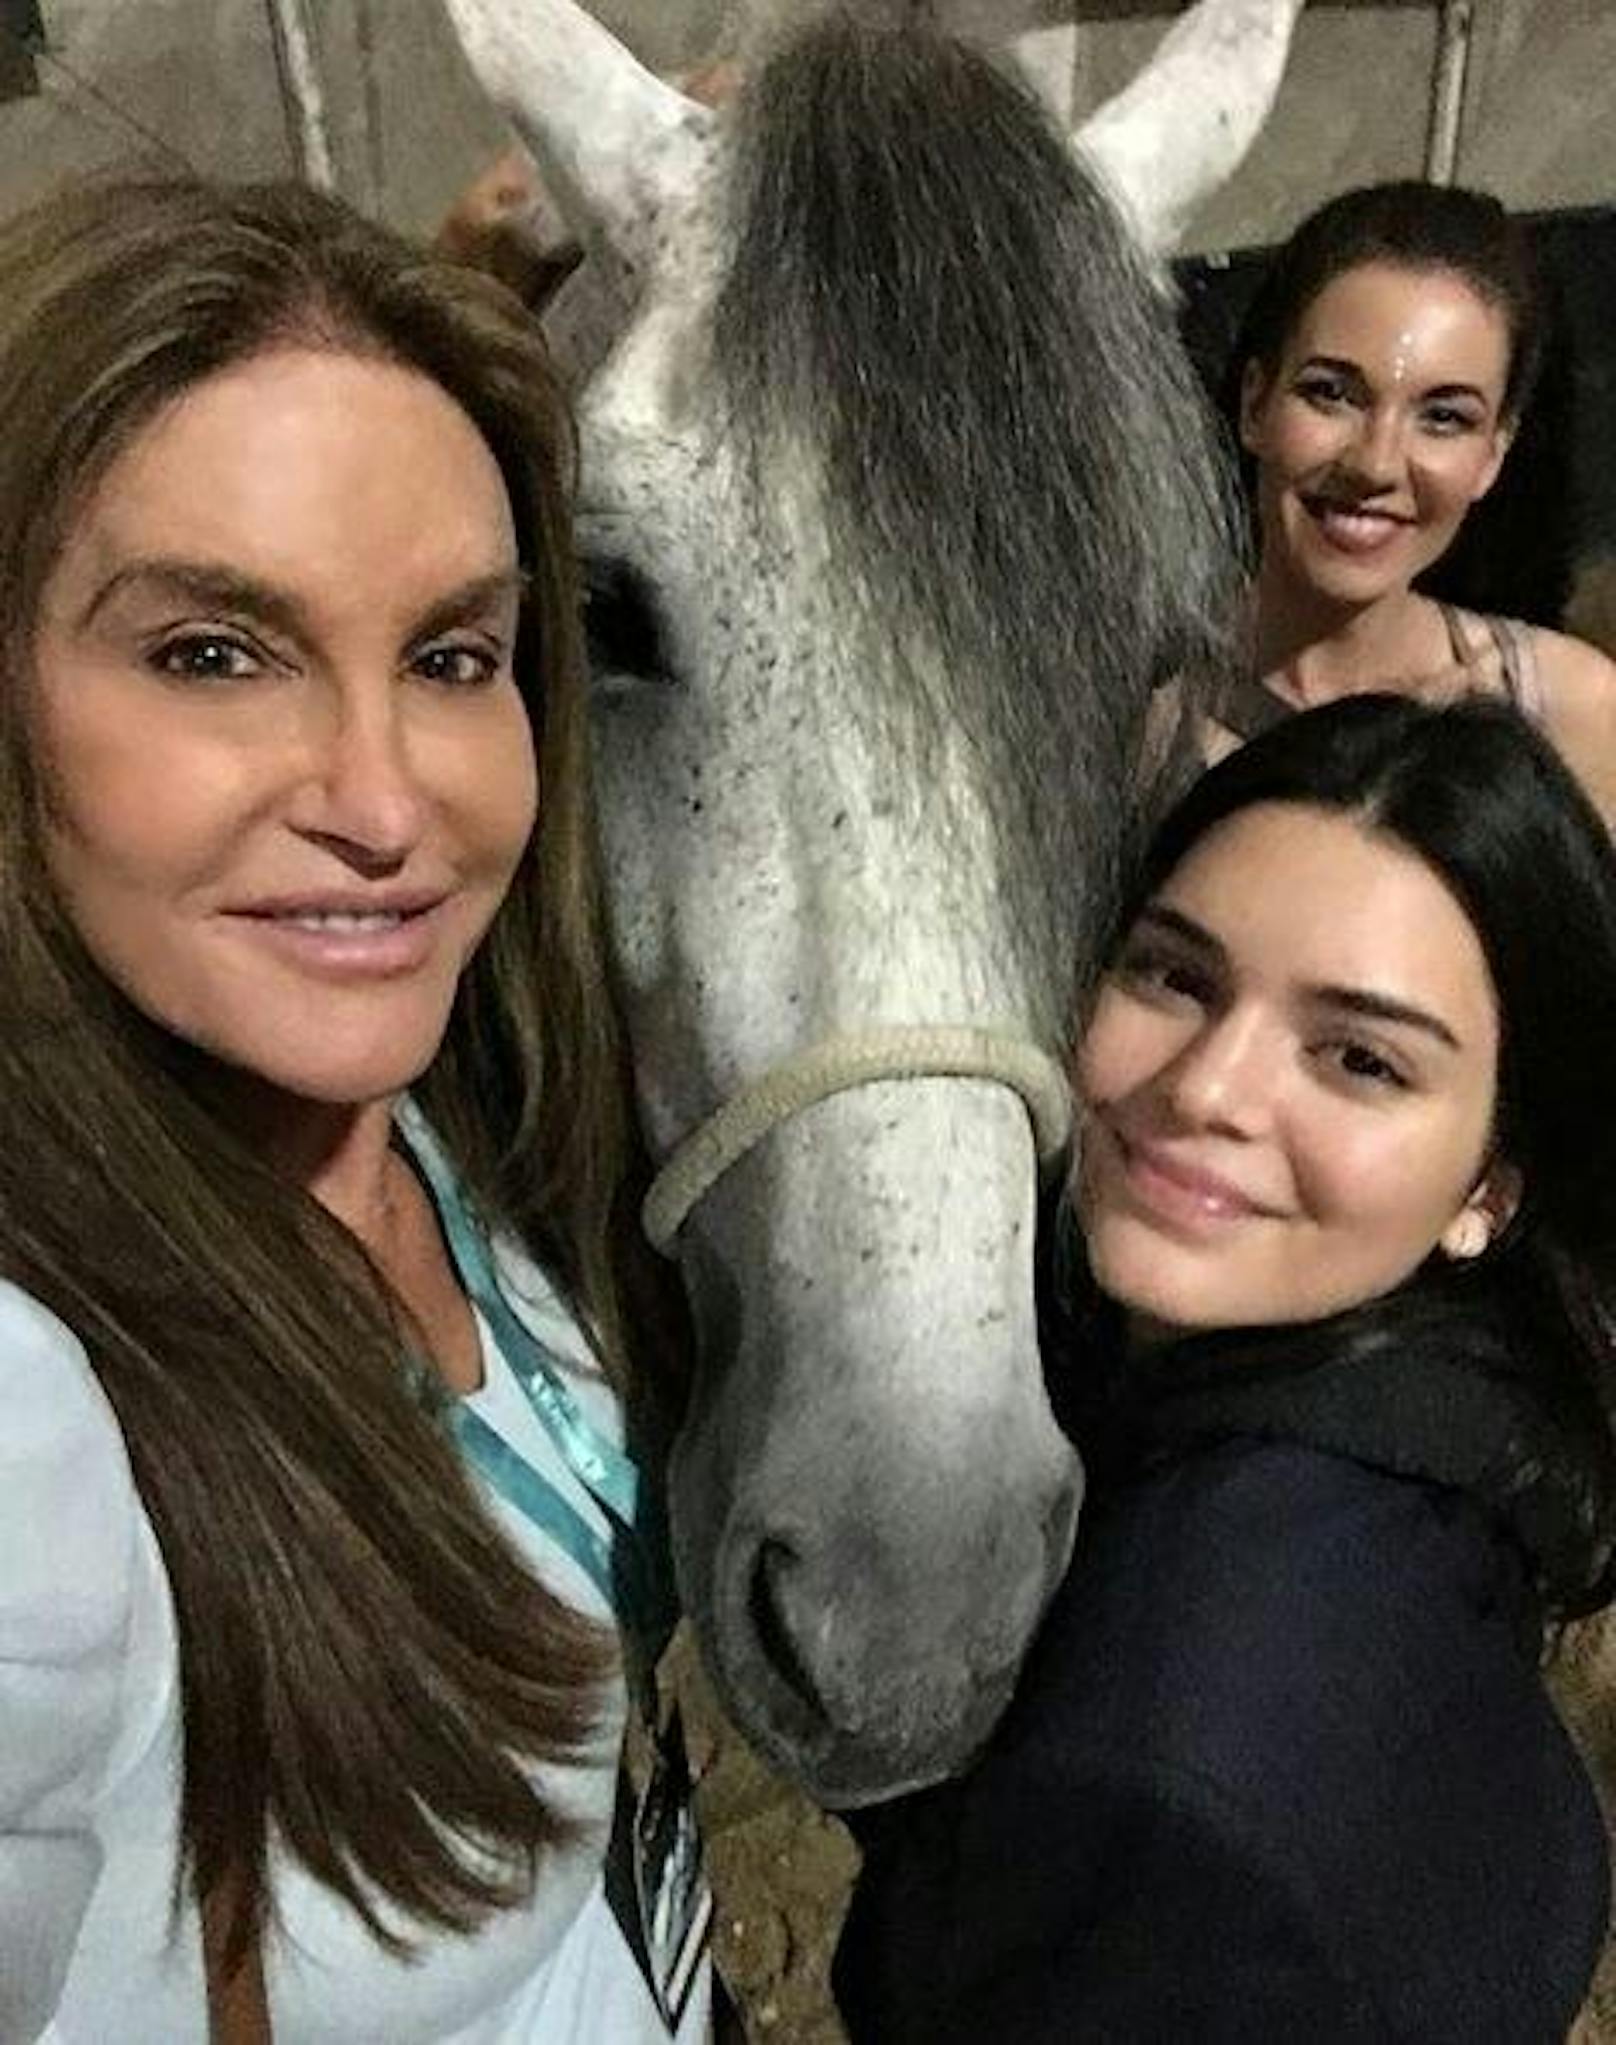 05.01.2017: Caitlyn Jenner war mit Tochter Kendall Jenner im Stall. "Meine Tochter liebt mein Pferd", schreibt Caitlyn dazu.